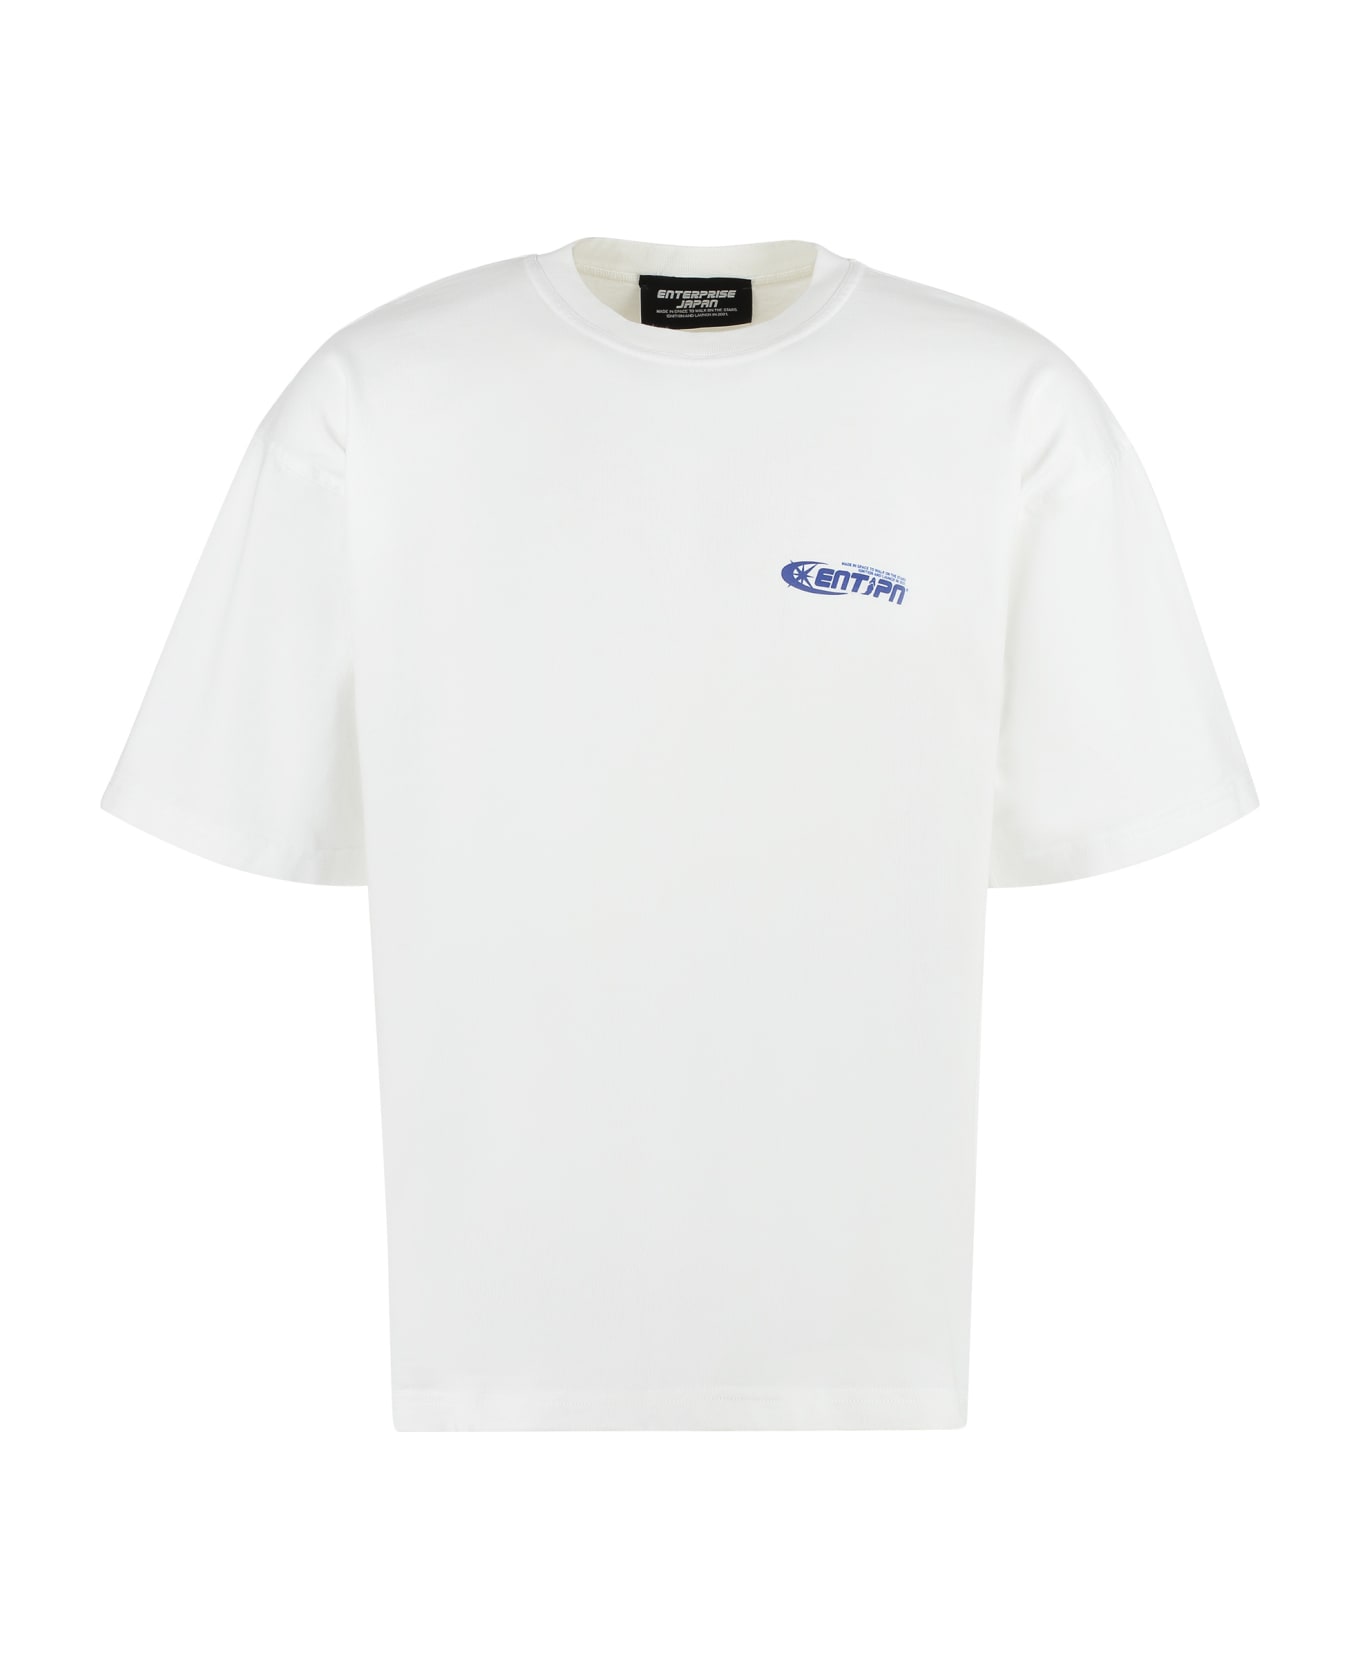 Enterprise Japan Ss Eyes Cotton Crew-neck T-shirt - White シャツ